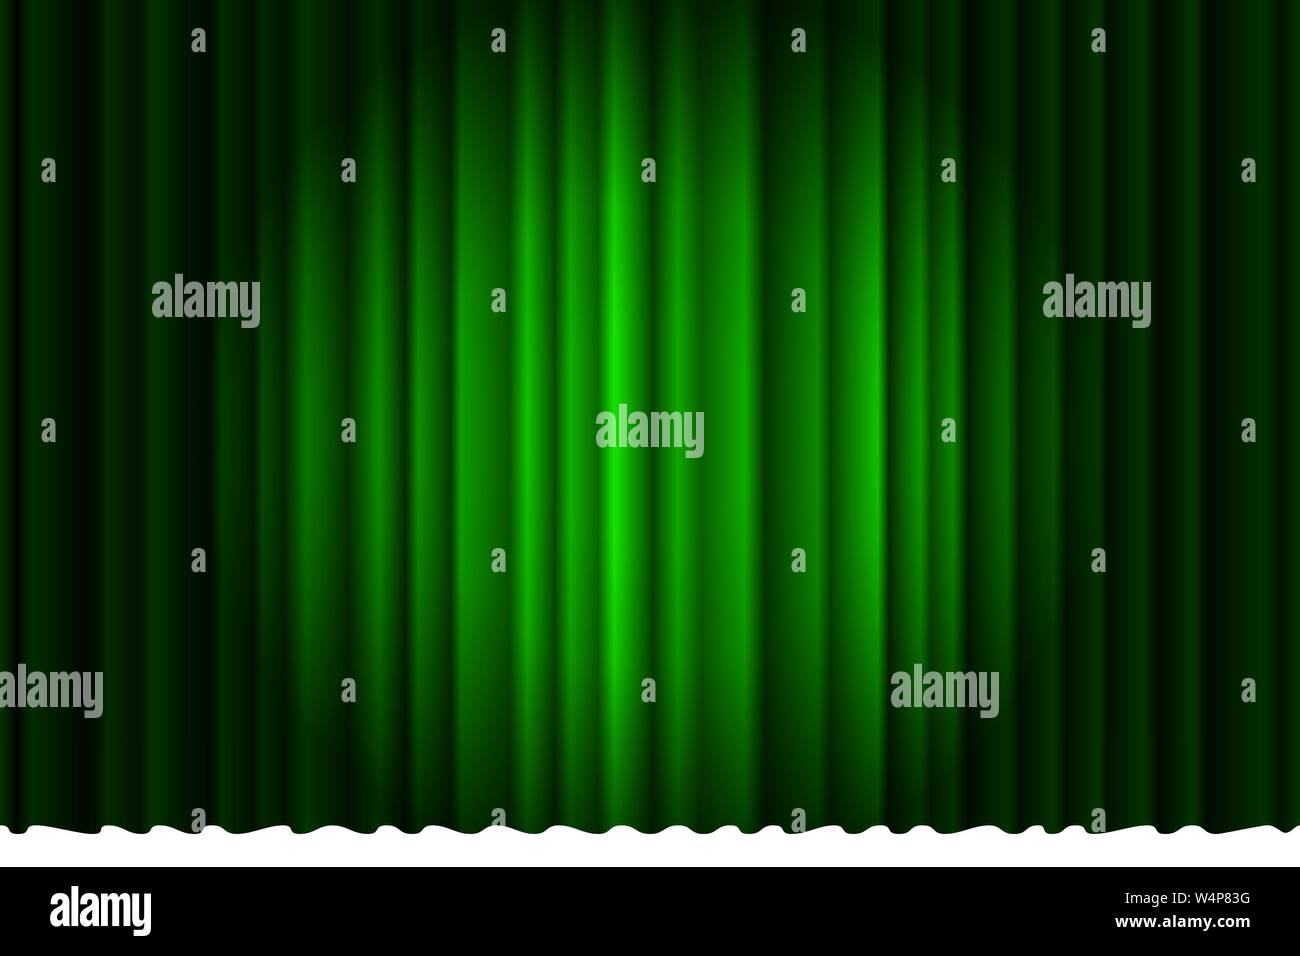 Geschlossener Luxus grünen Vorhang mit vielen Schatten Bühne Hintergrund Scheinwerfer Strahl beleuchtet. Theatralische Samtstoff Vorhänge Bühne Eröffnungszeremonie. Vektorgrafik Stock Vektor